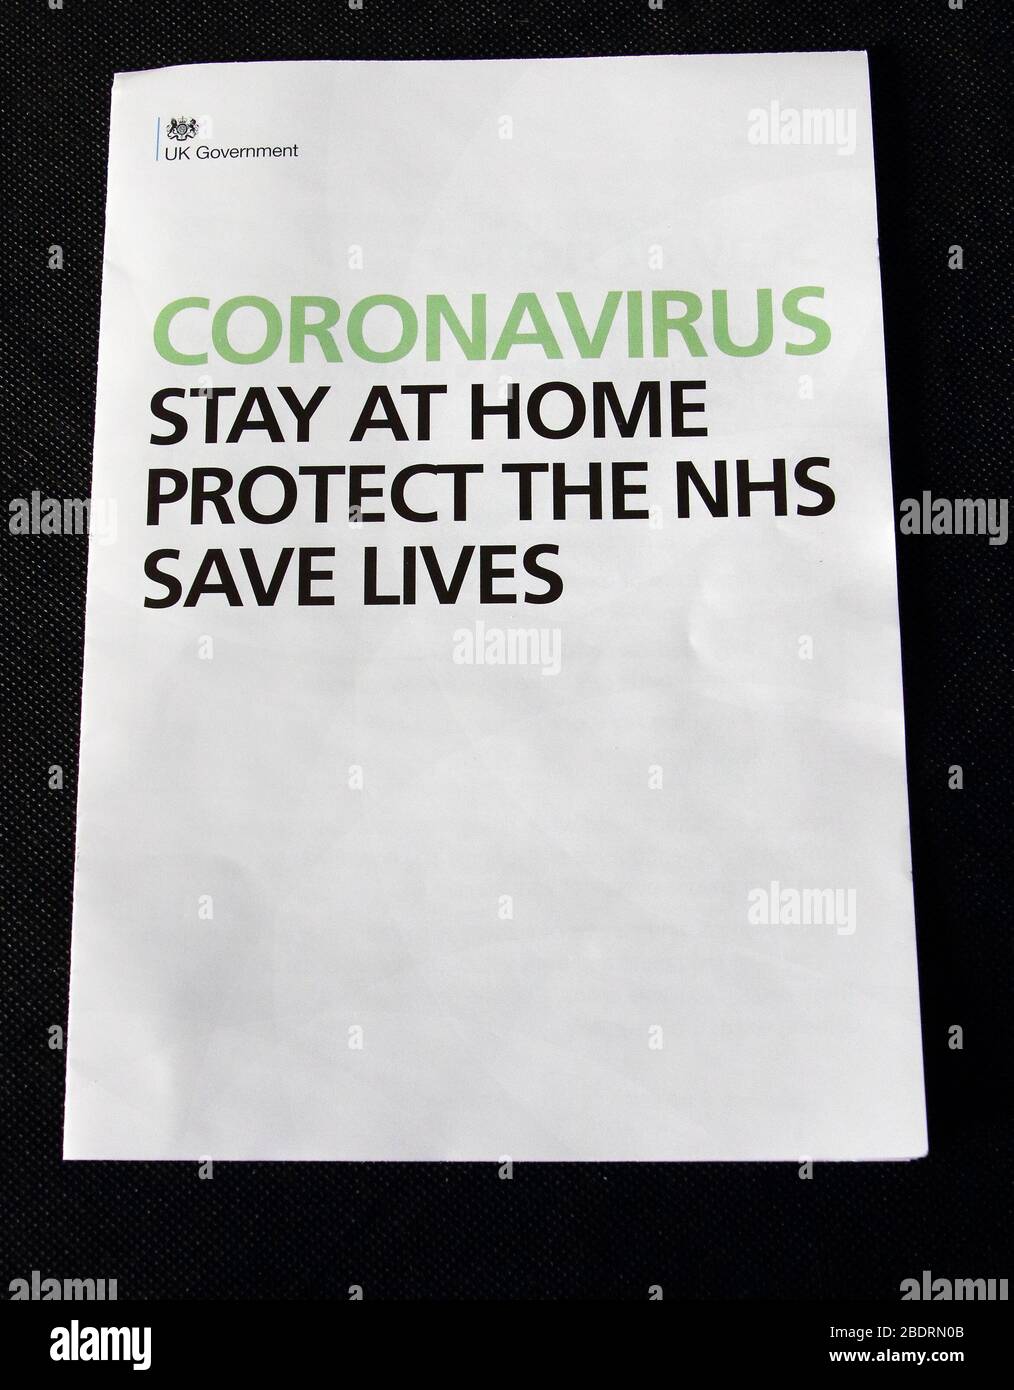 REINO UNIDO. Una carta de Coronavirus del primer ministro británico Boris Johnson ha sido enviada a todos los hogares del Reino Unido instando al público a quedarse en casa. Alrededor de 30 millones de hogares del Reino Unido recibirán la carta Covid-19, junto con un folleto sobre los síntomas, directrices y concienciación del Coronavirus. Reino Unido 6 de abril de 2020 Ref: LMK73-J6425-060420 Keith Mayhew/Landmark Media WWW.LMKMEDIA.COM Foto de stock